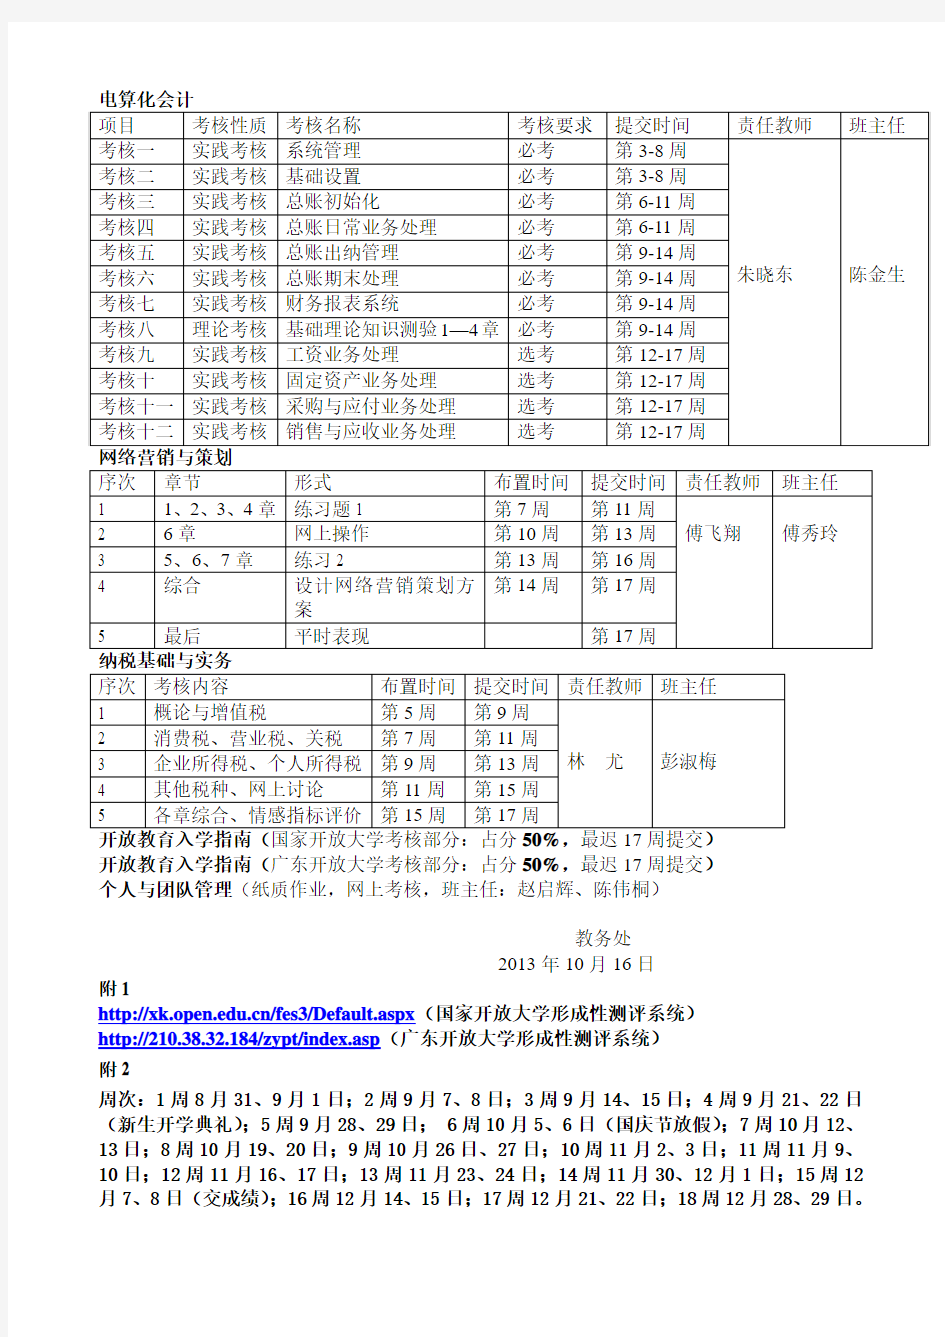 广东开放大学形成性测评系统网址更新